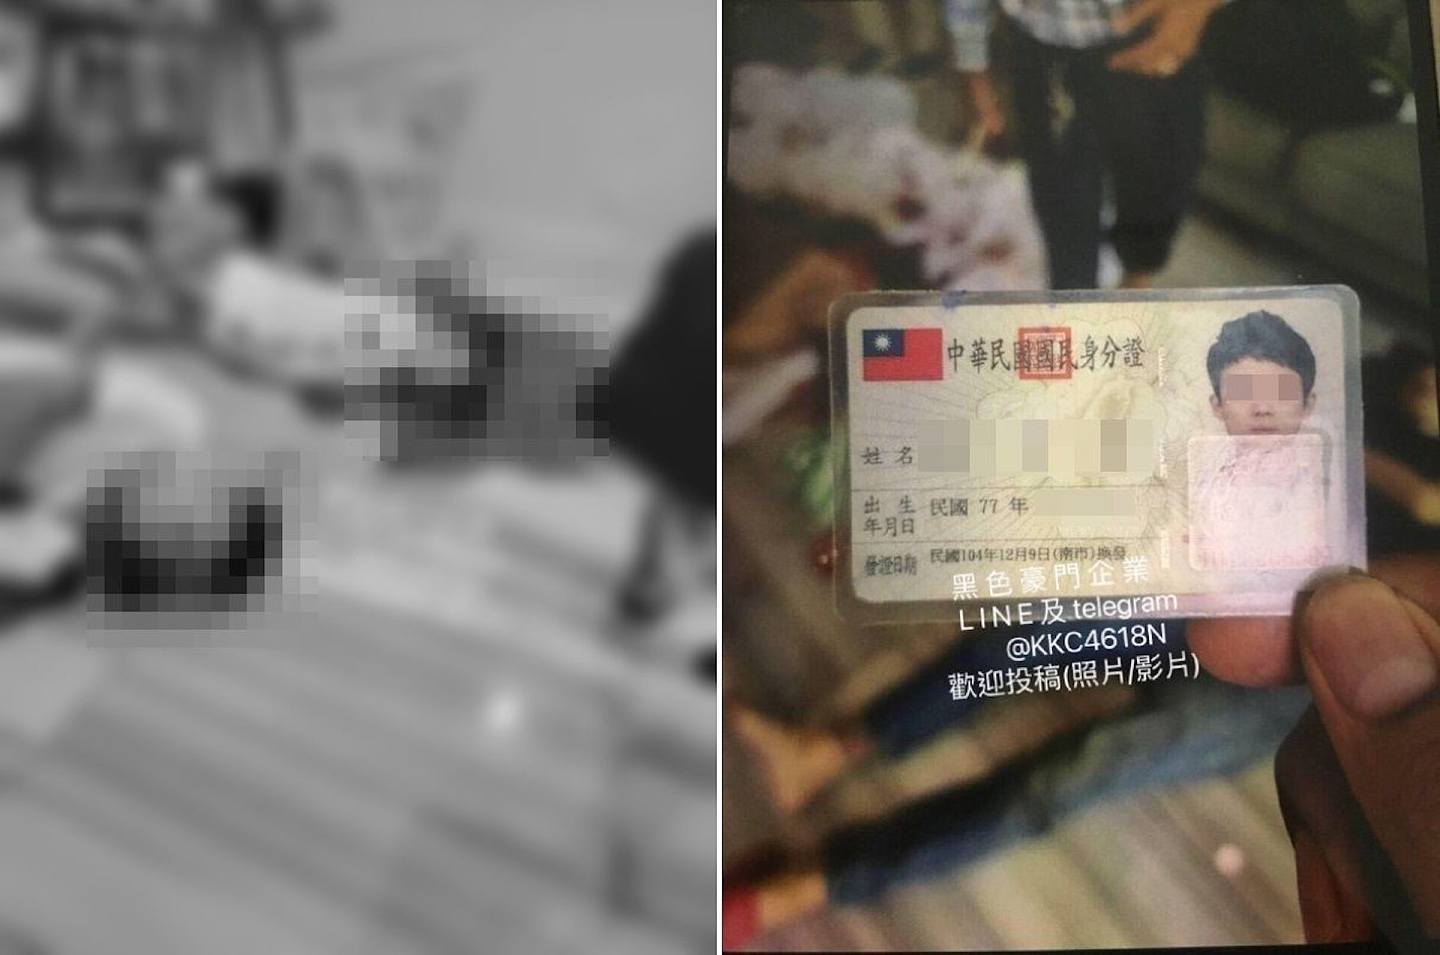 柬埔寨28日晚间发生的枪击命案，经查证确认3明倒卧血泊的死者都是台湾人，震惊各界之余也火速展开调查，然而柬埔寨警方发言人在初步调查后推翻原本「遭潮州帮杀害」一说，判定现场并没有死者以外的第4方势力介入。 图为在网上疯传声称在现场拍摄的照片。 （黑色豪门企业FB）